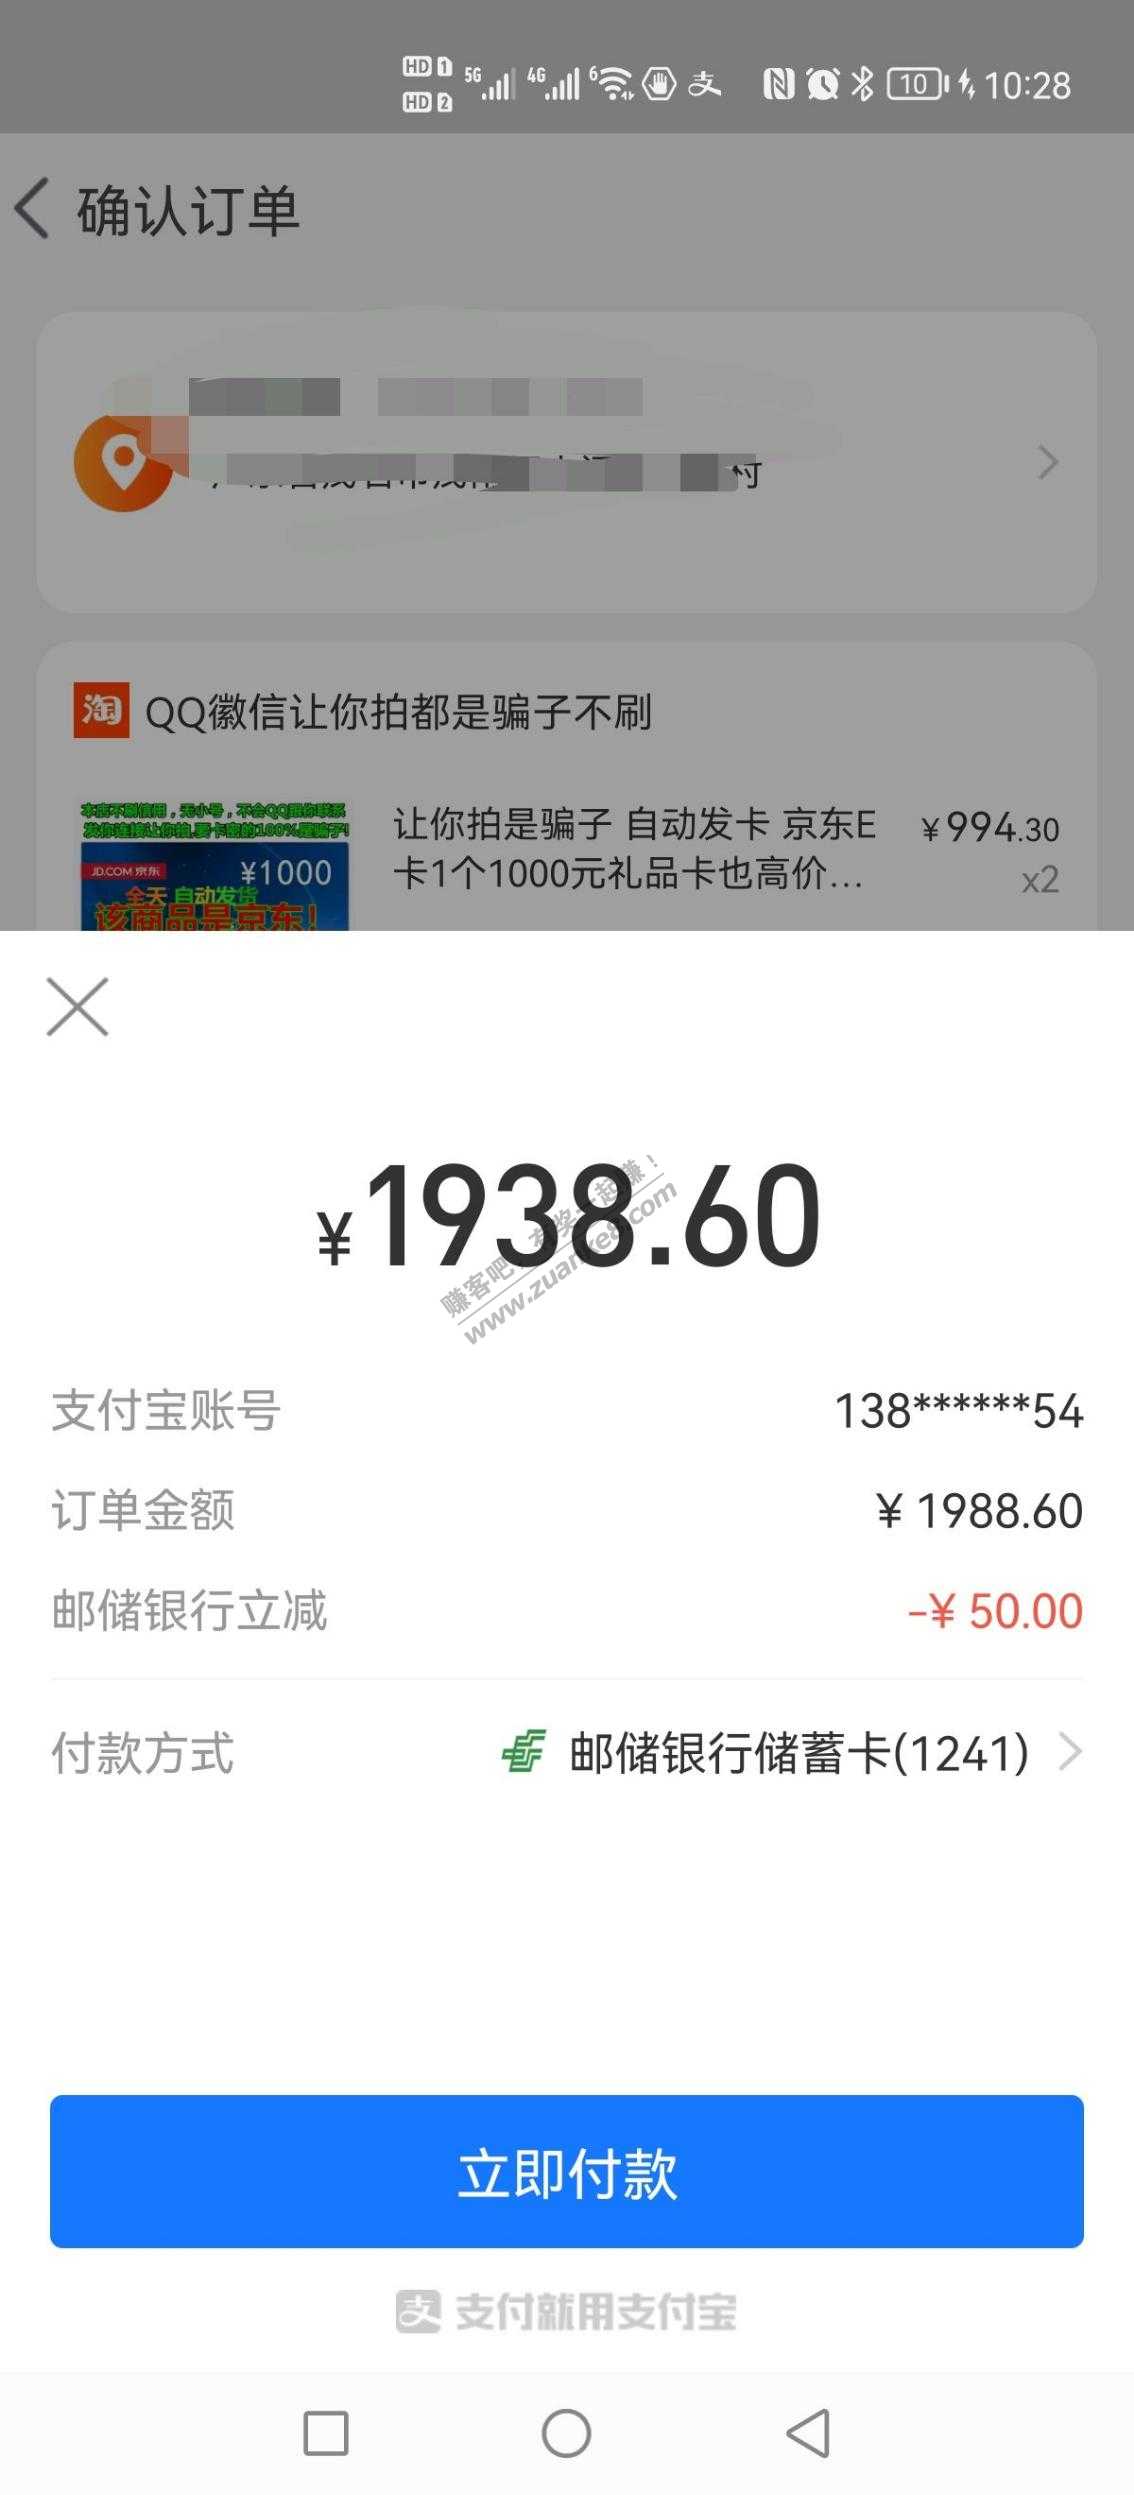 速度-邮政卡500-50-惠小助(52huixz.com)